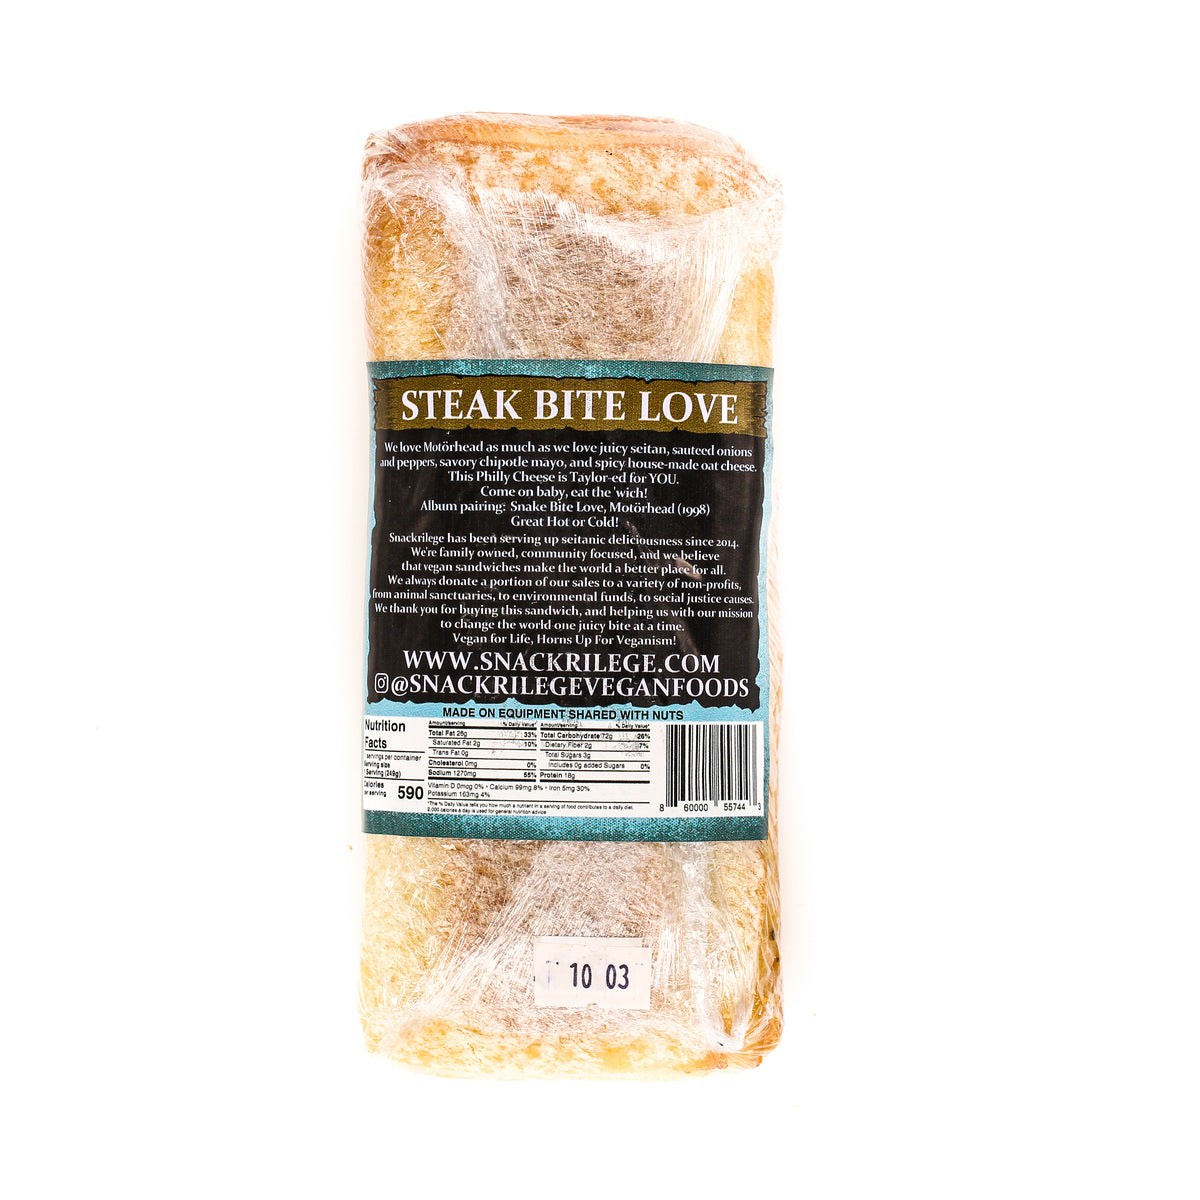 Snackrilege The Steak Bite Love